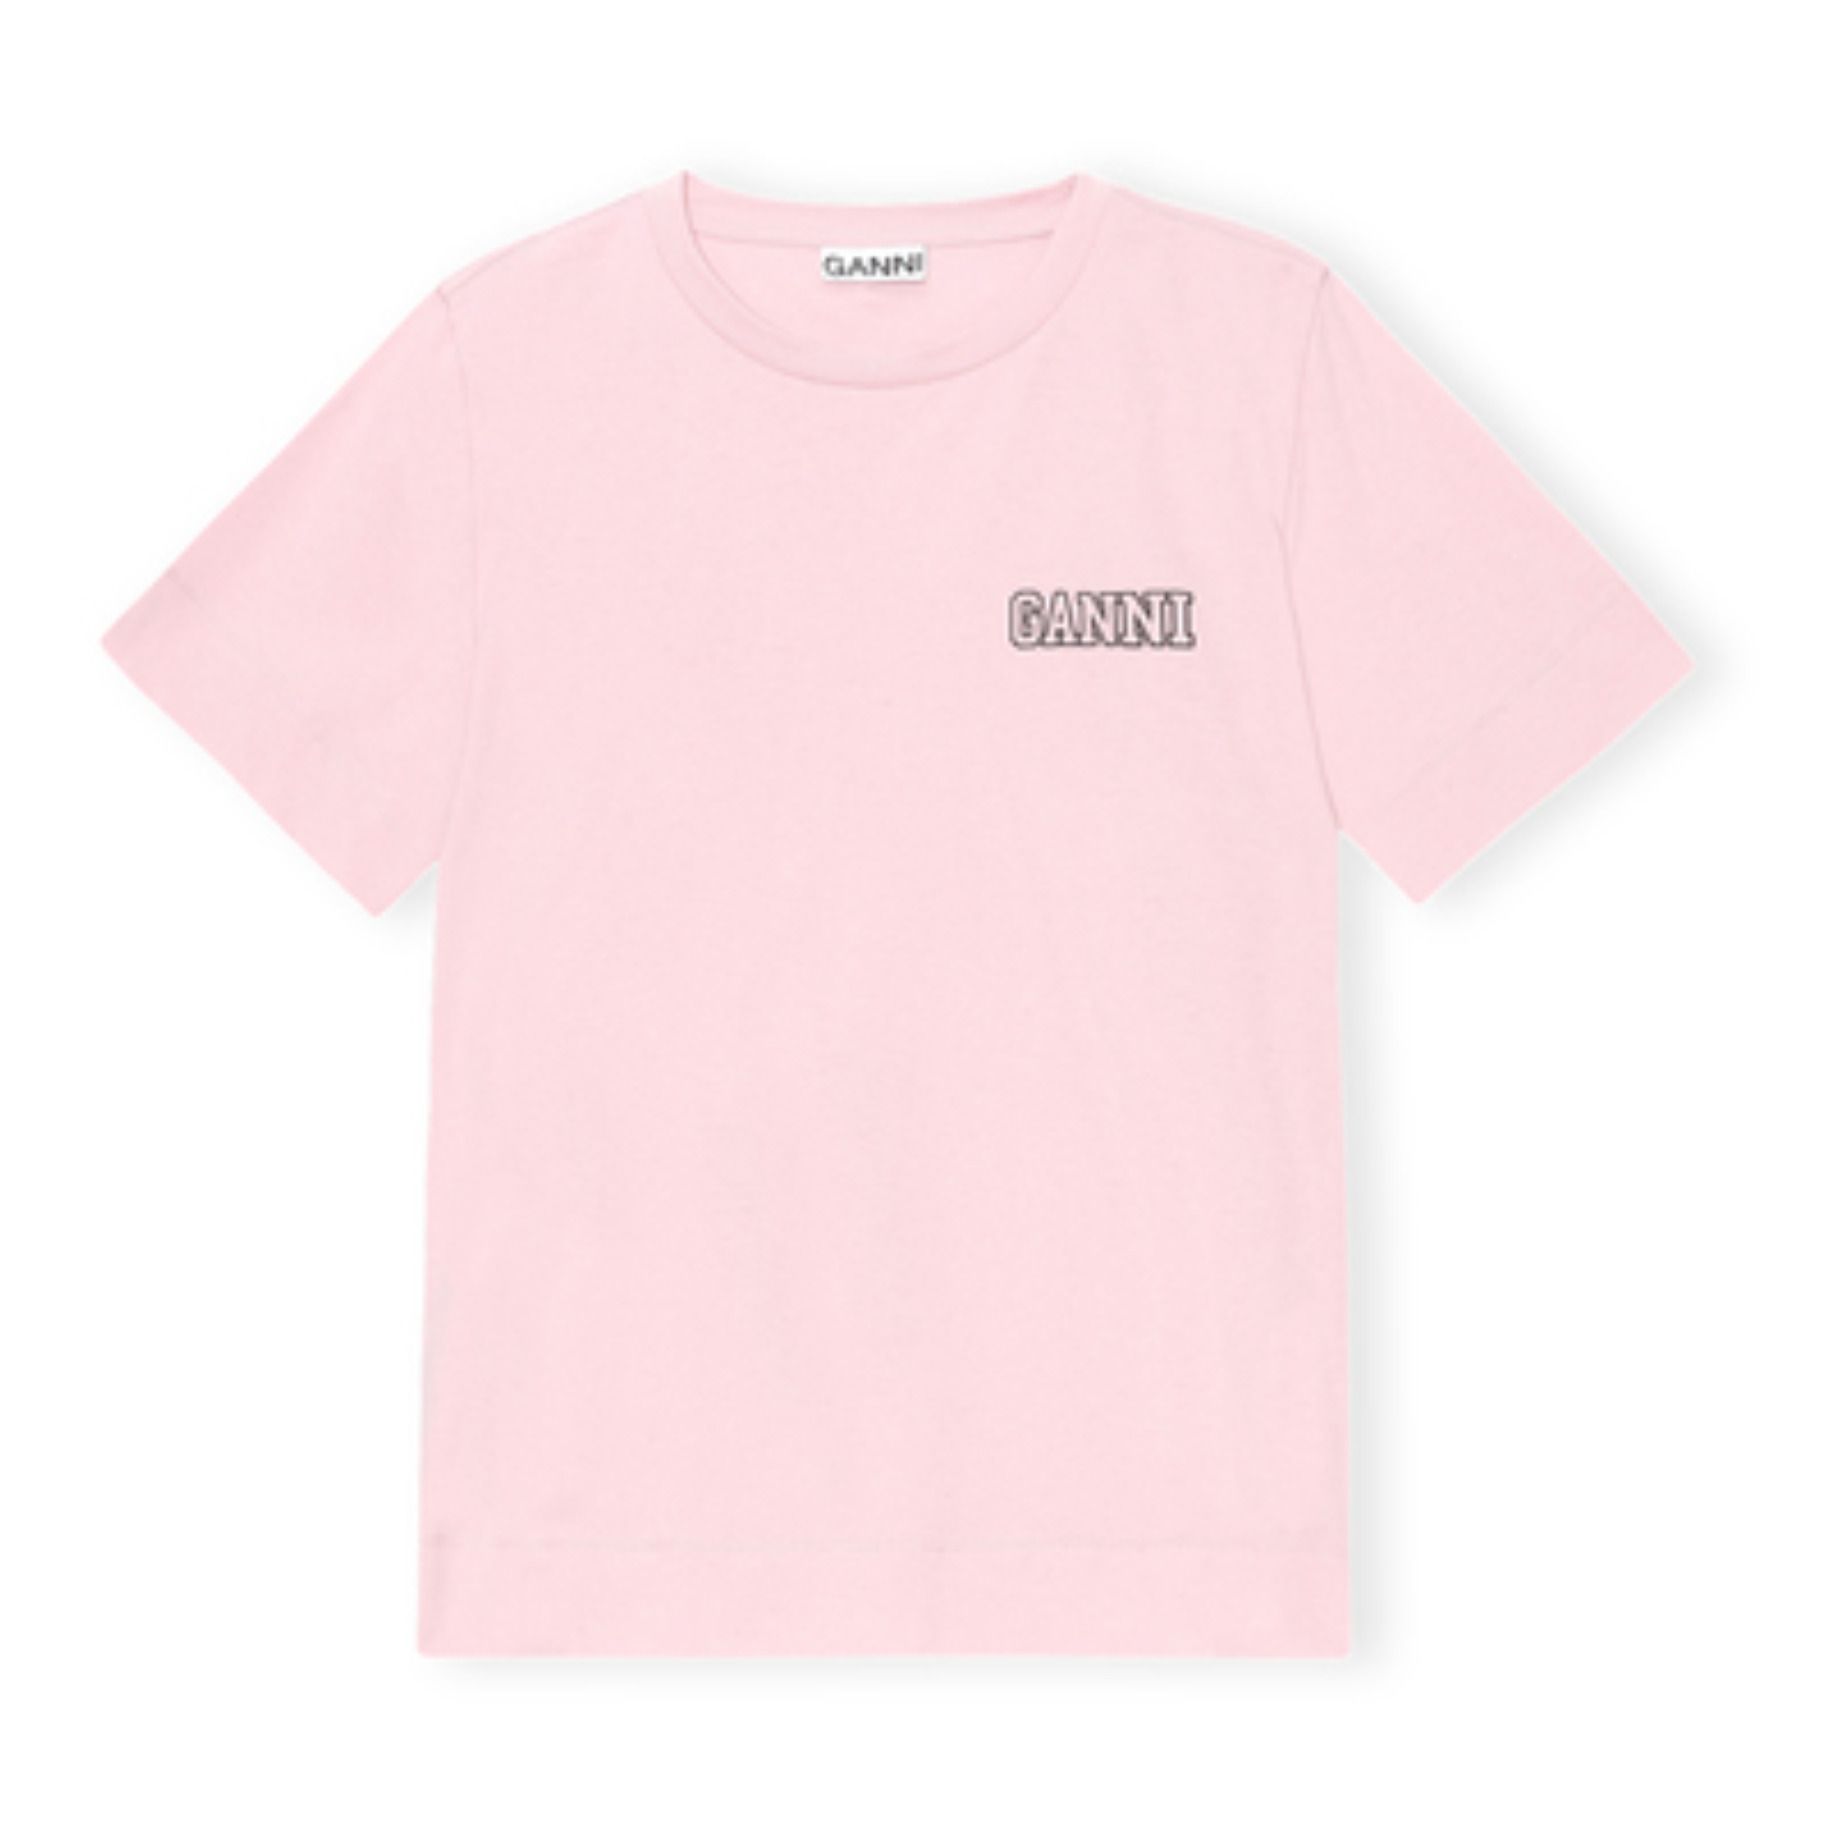 Ganni - T-shirt Software Coton Recyclé - Femme - Rose